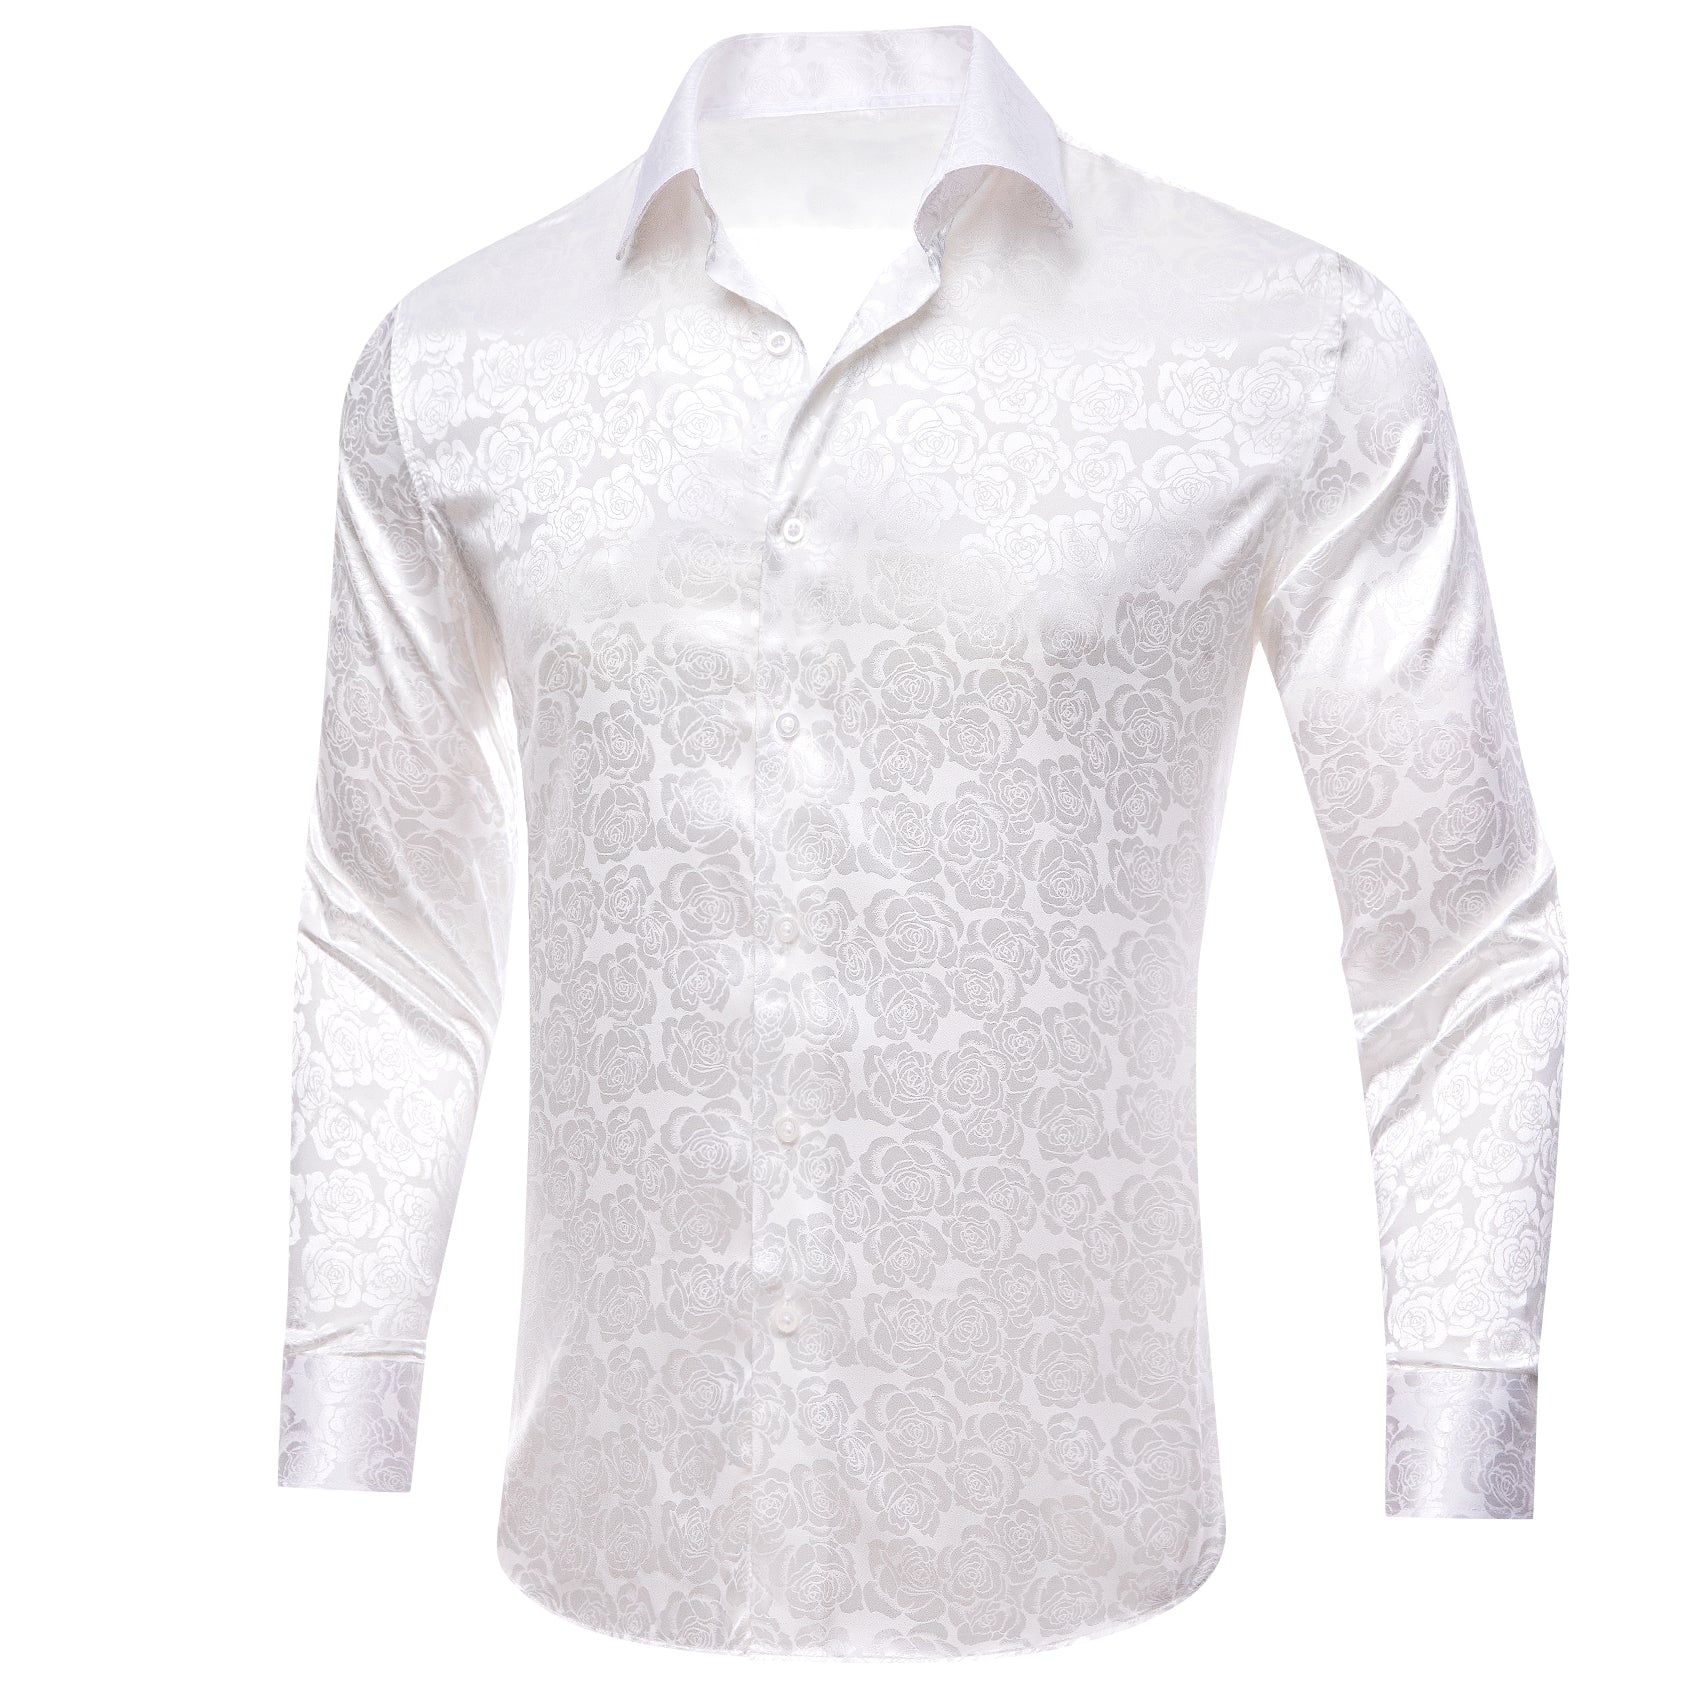 Barry.wang White Print Flower Silk Men's Shirt